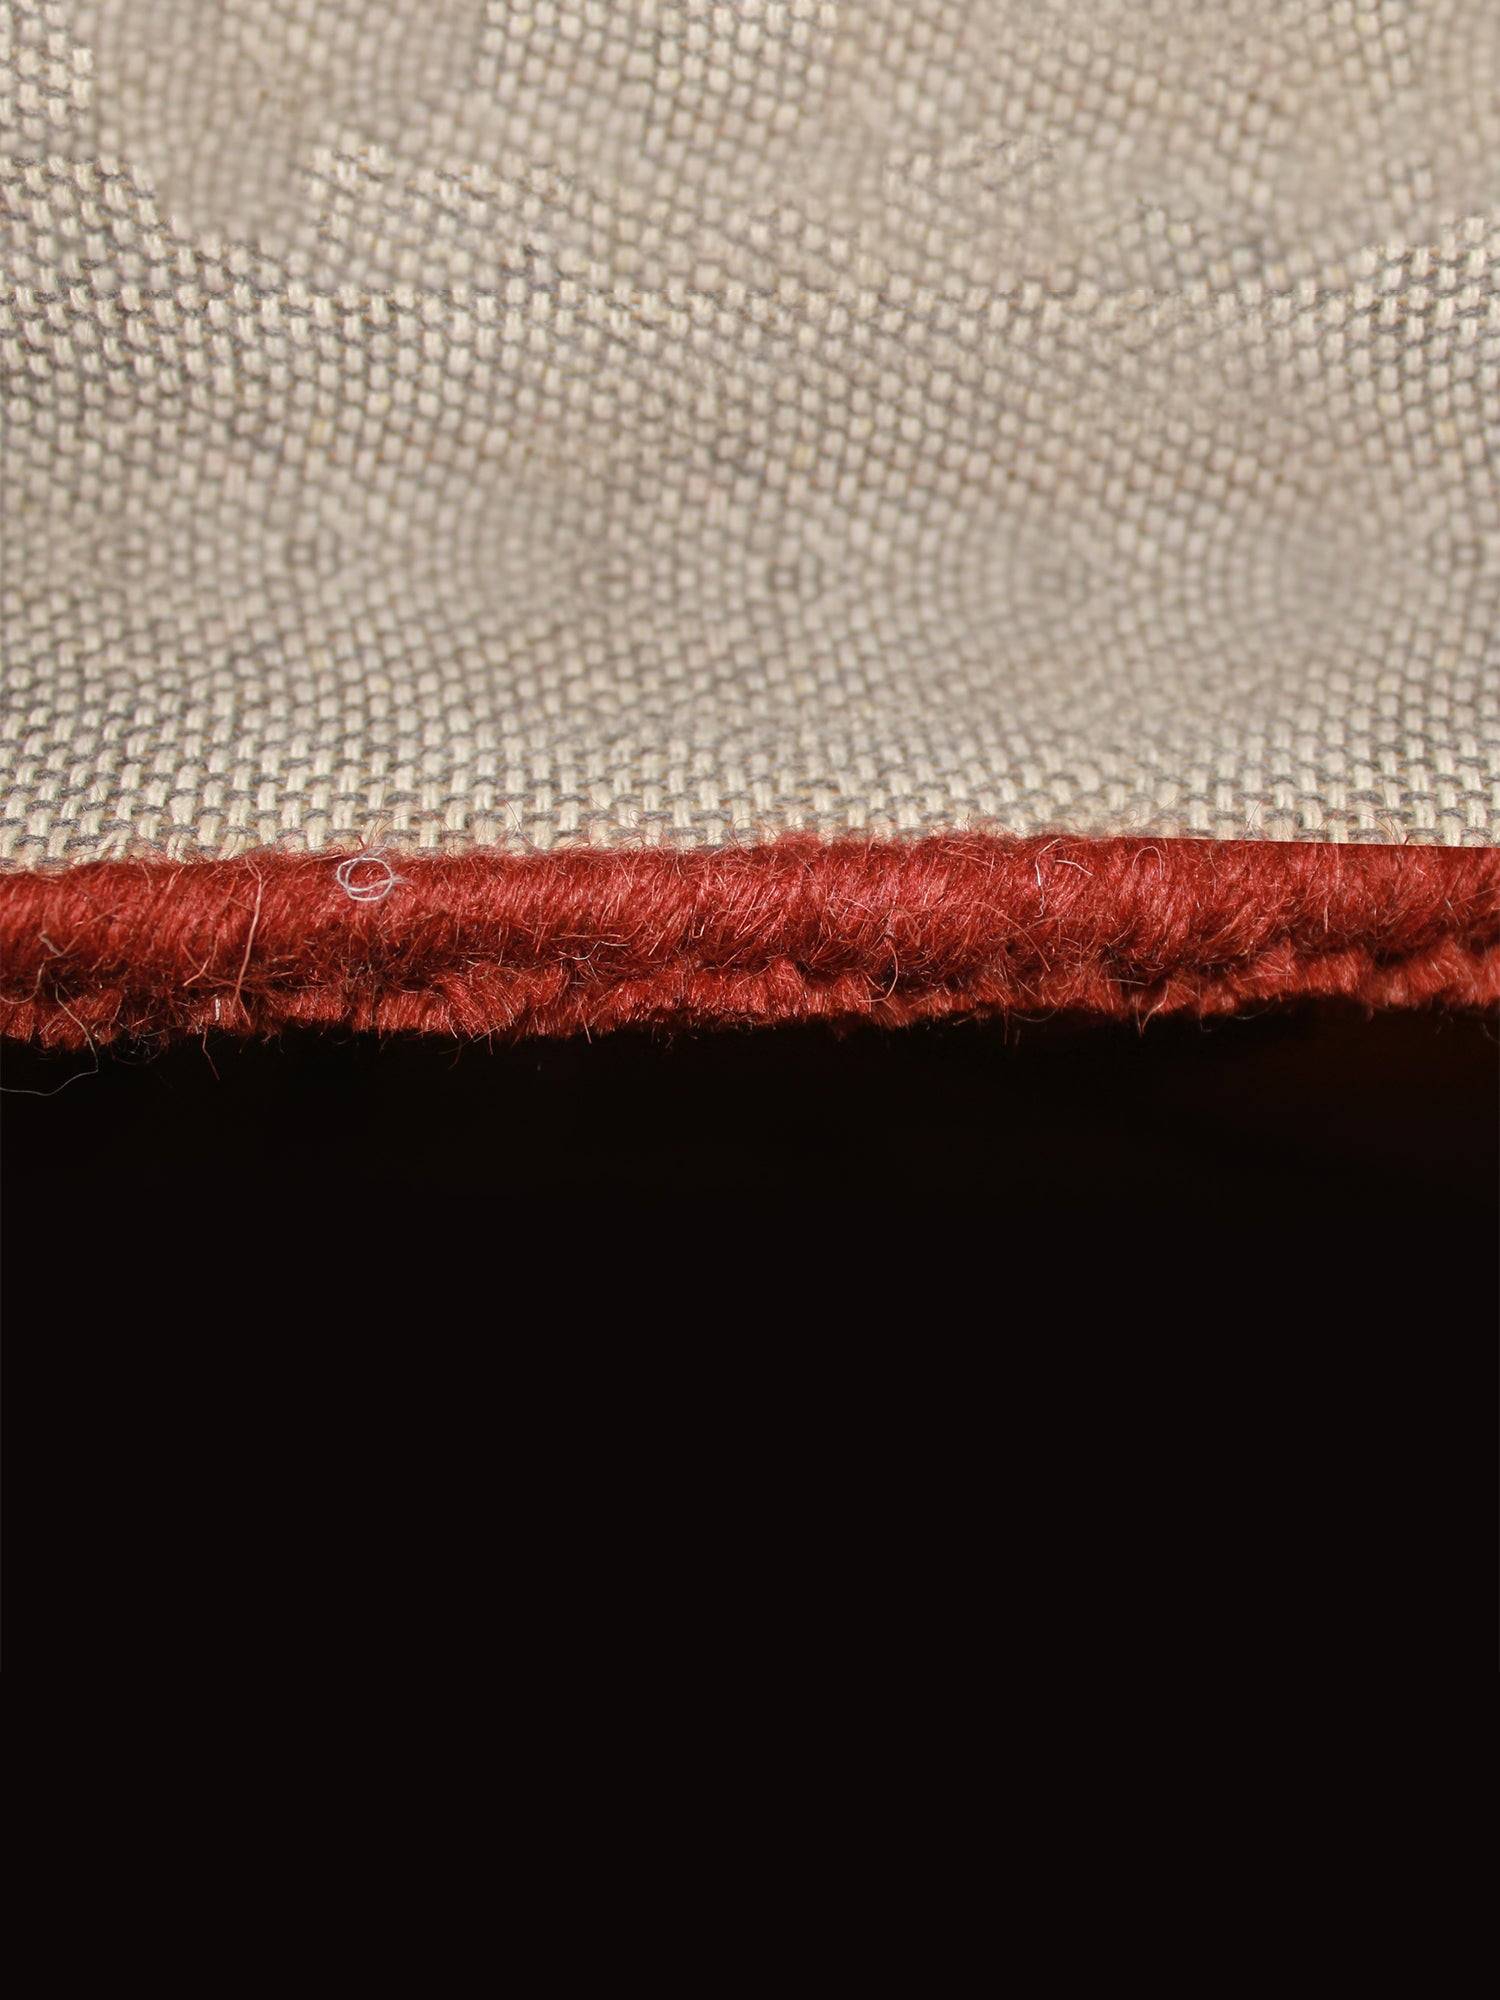 Carpet Hand Tufted 100% Woollen Patchwork Multicolour - 3ft X 5ft